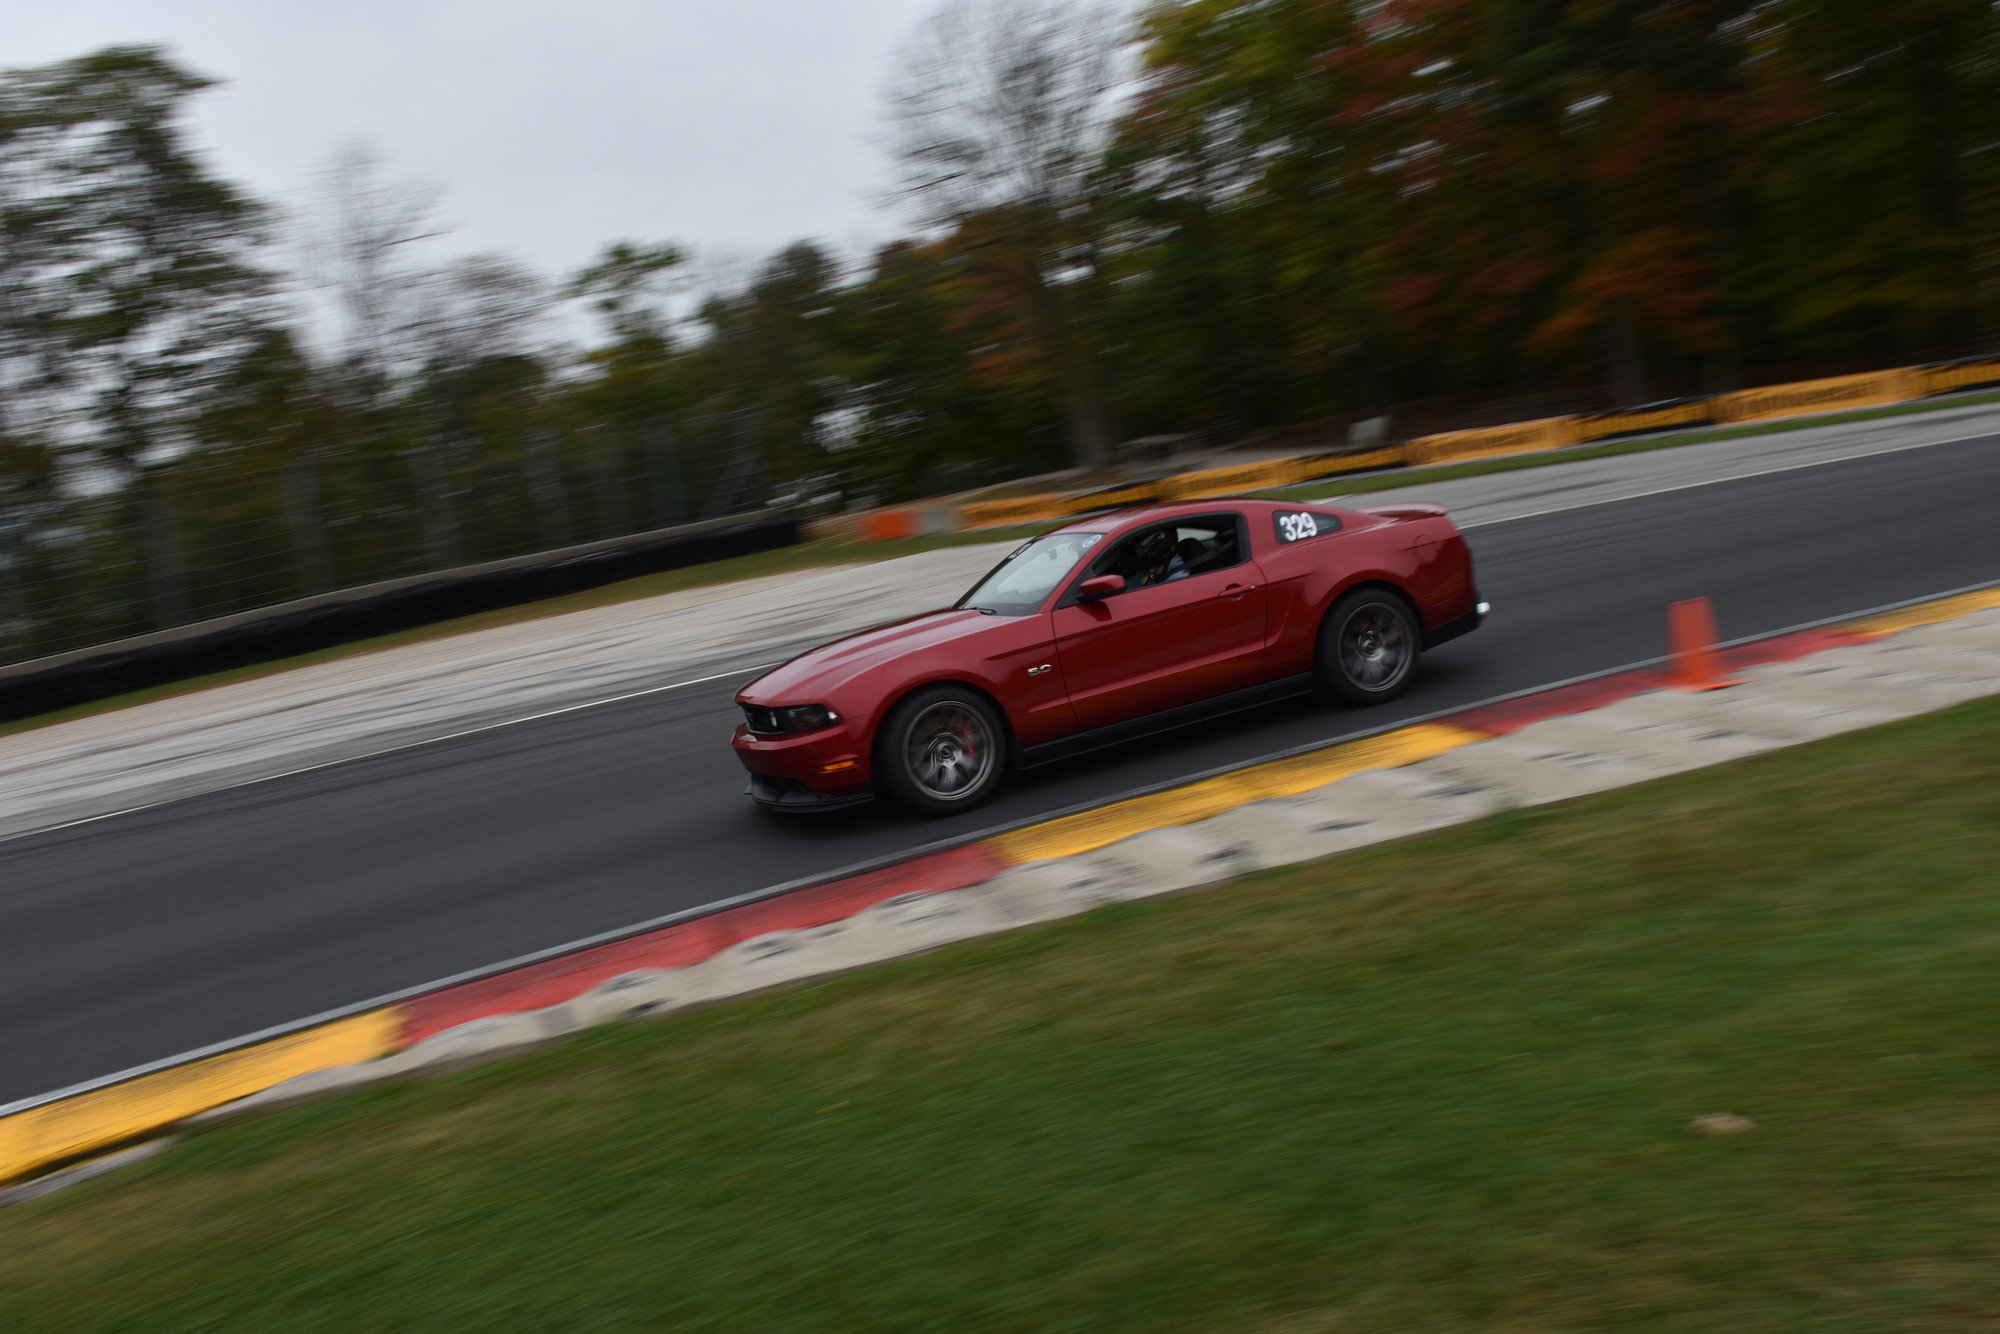 2011 Mustang
GT_50L Road Race -  (Quarter life crisis)